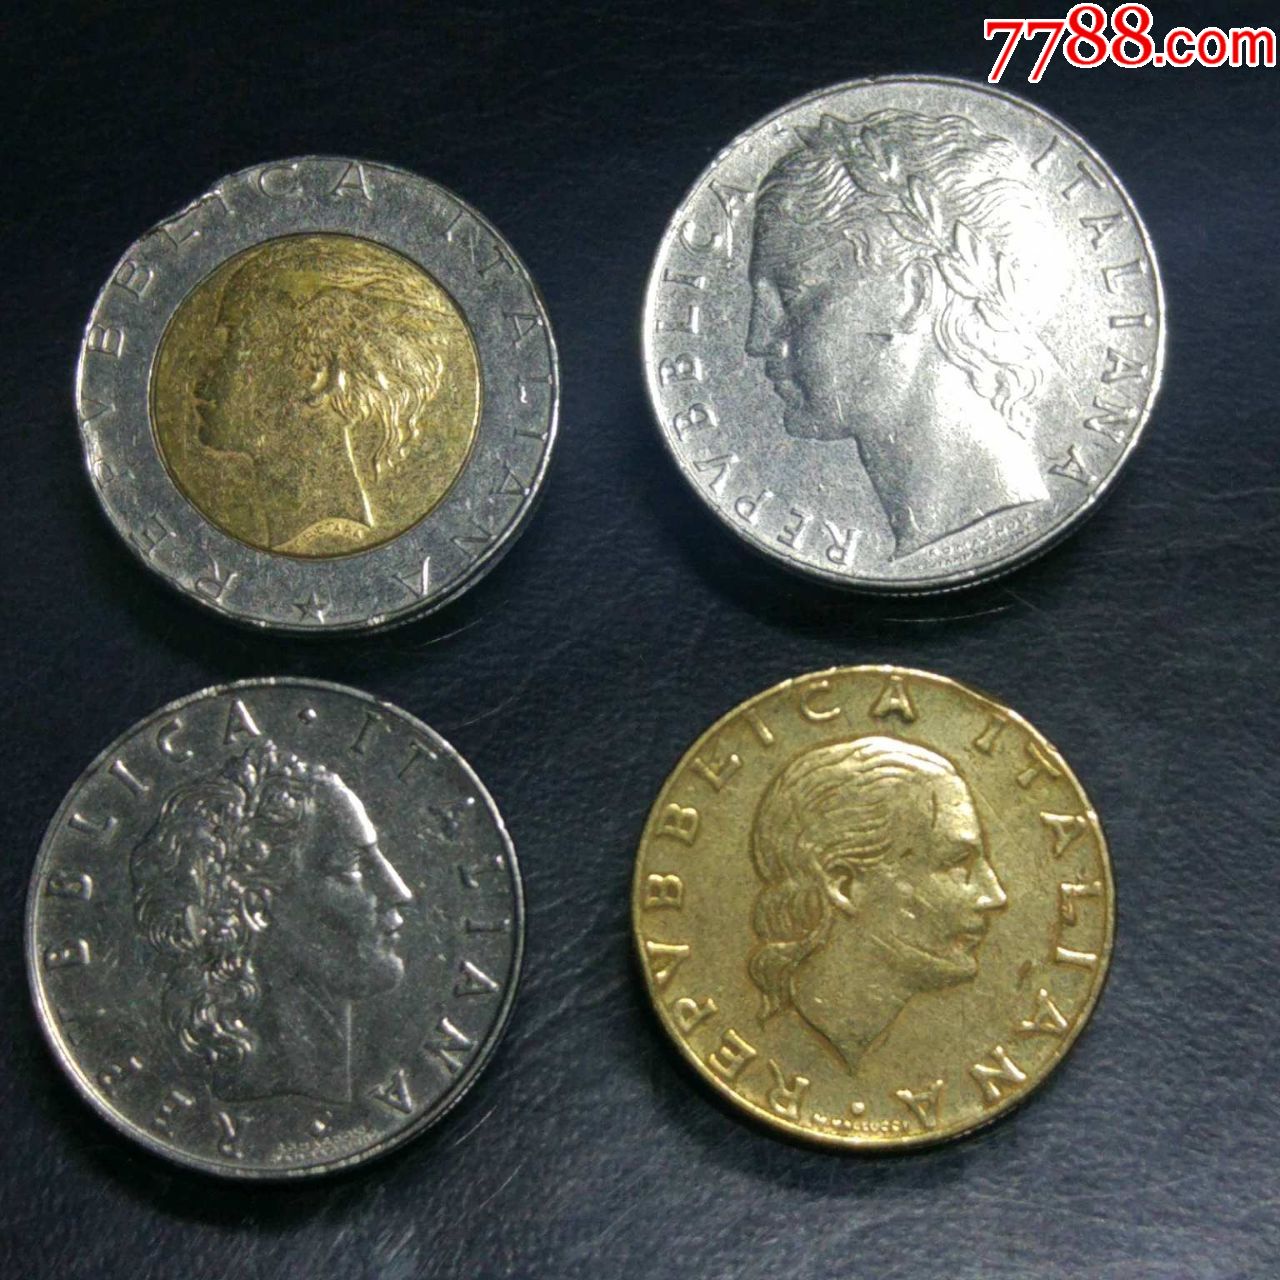 意大利早期硬币一套4枚.多年收藏,实物拍摄.年份随机发货.